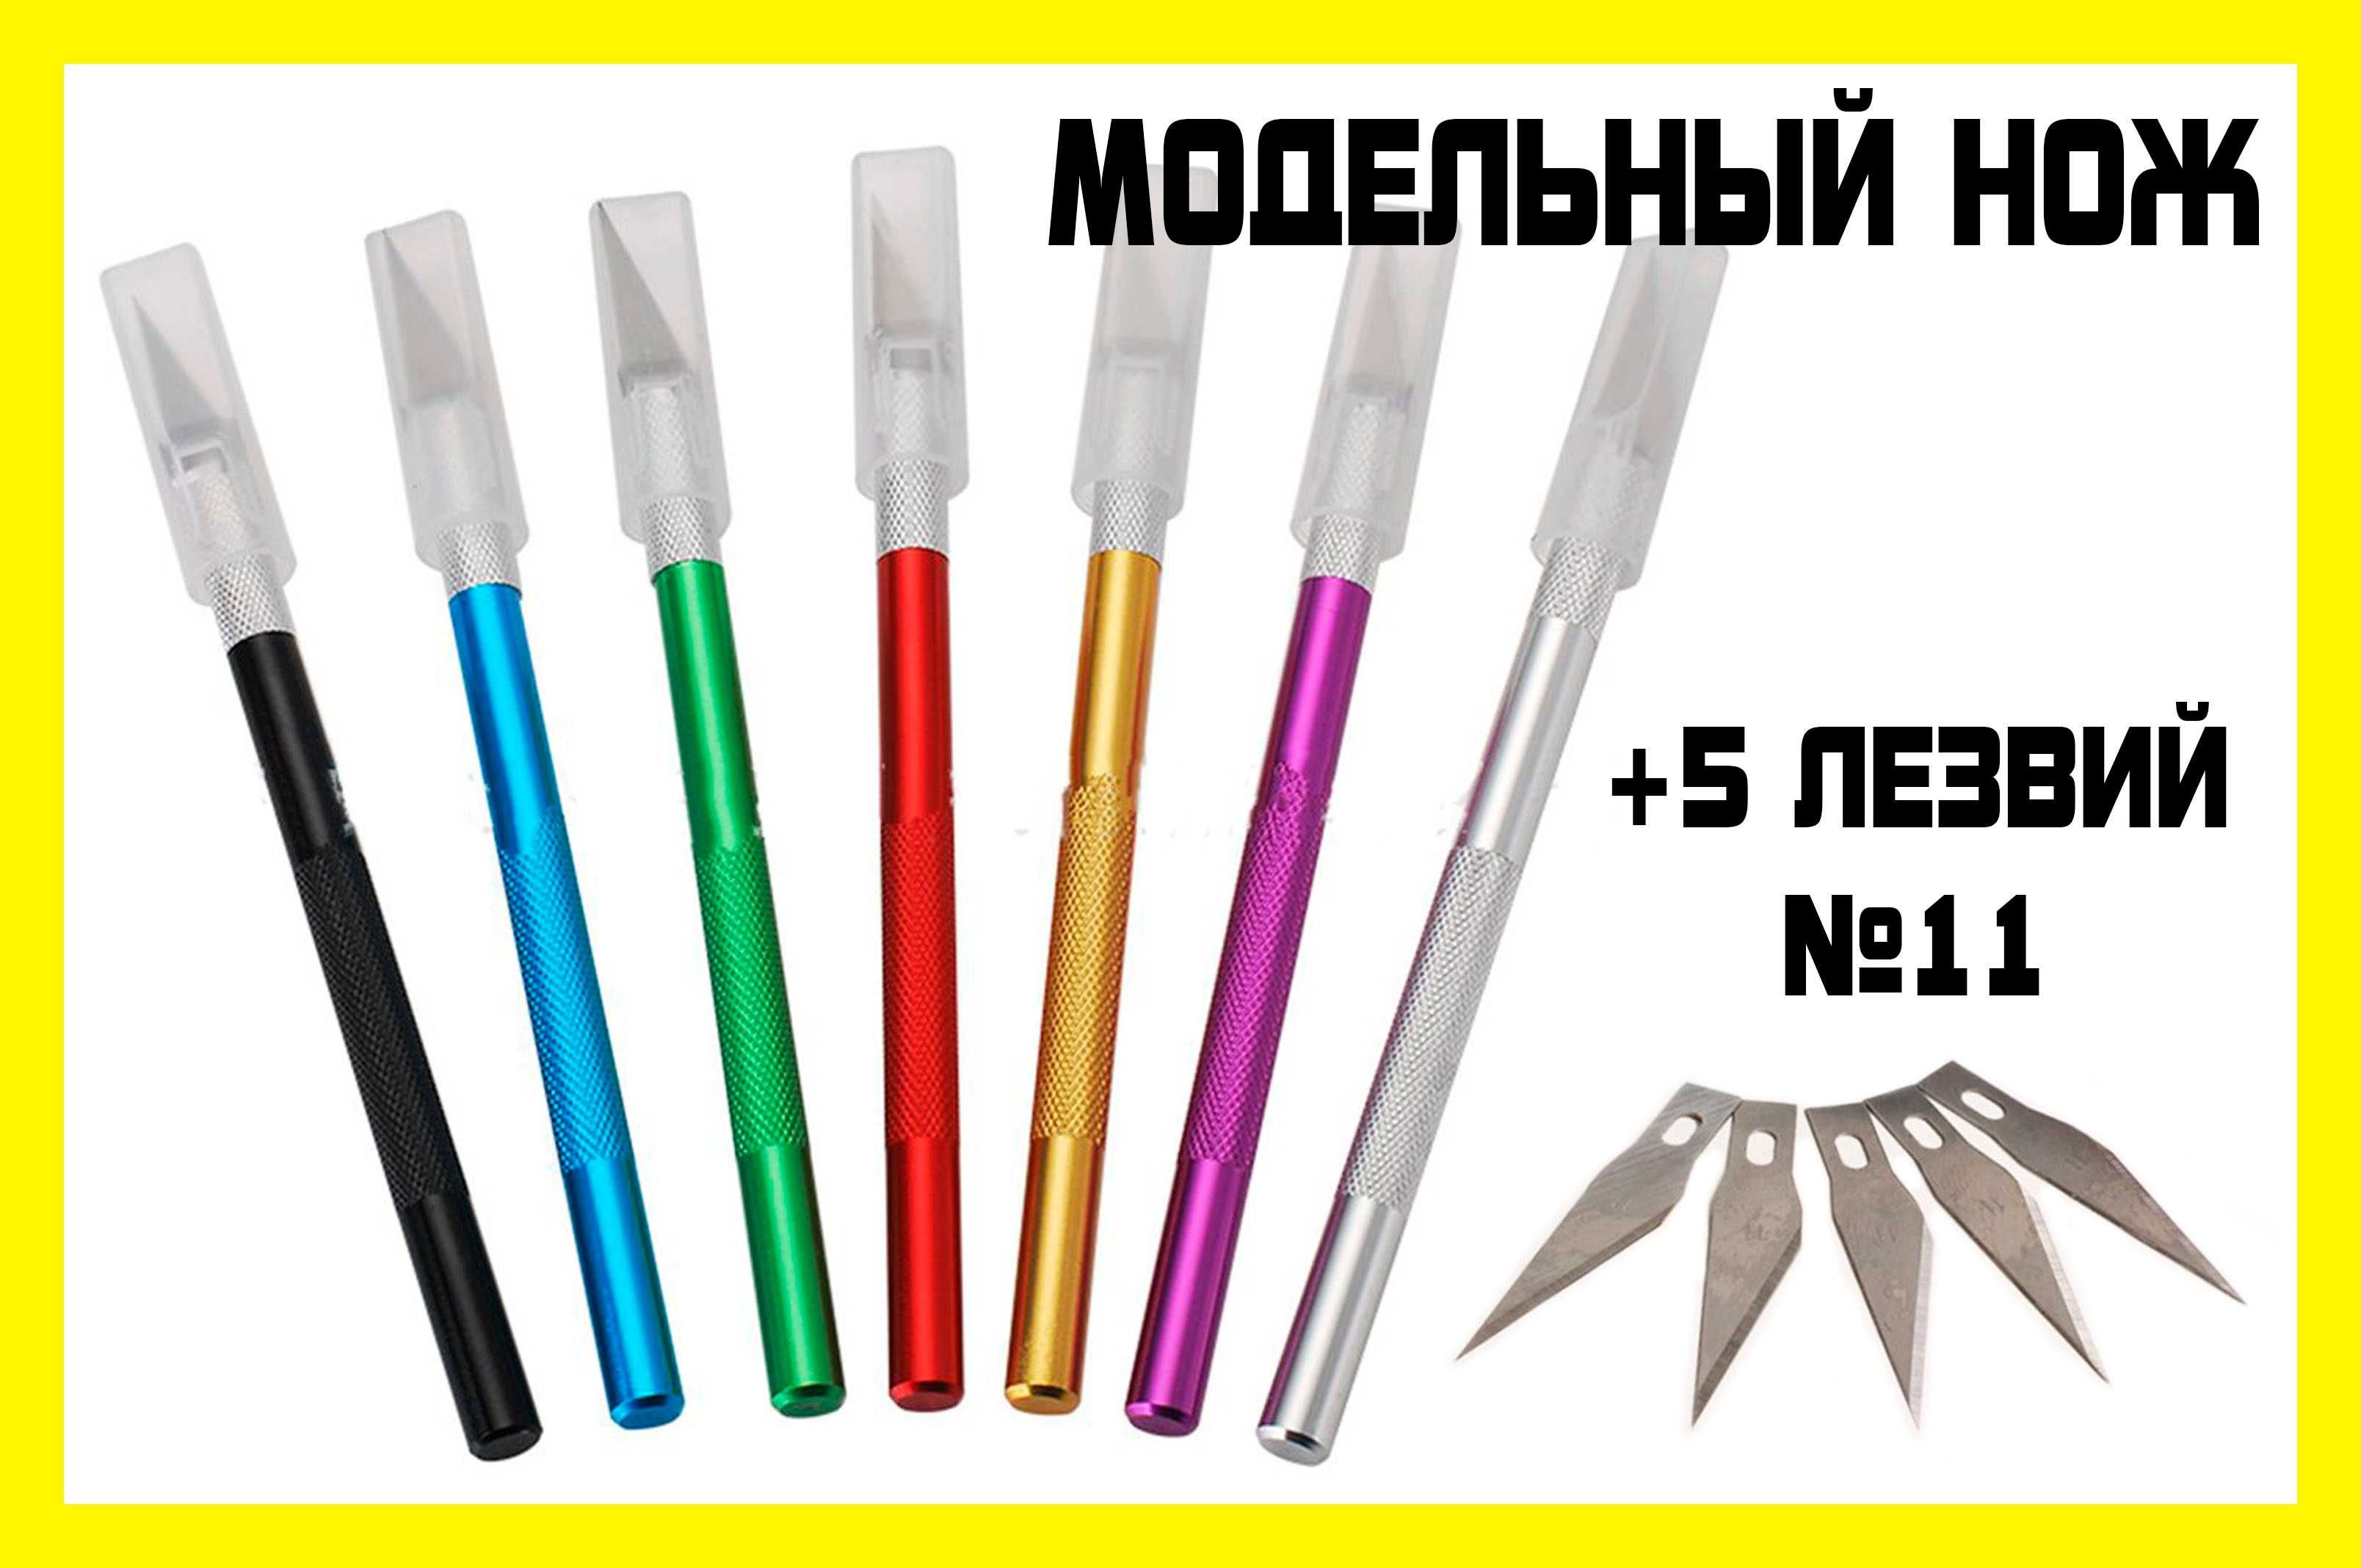 Макетный нож лезвия X-ACTO WLXY №4 №11 №16 модельный нож хобби